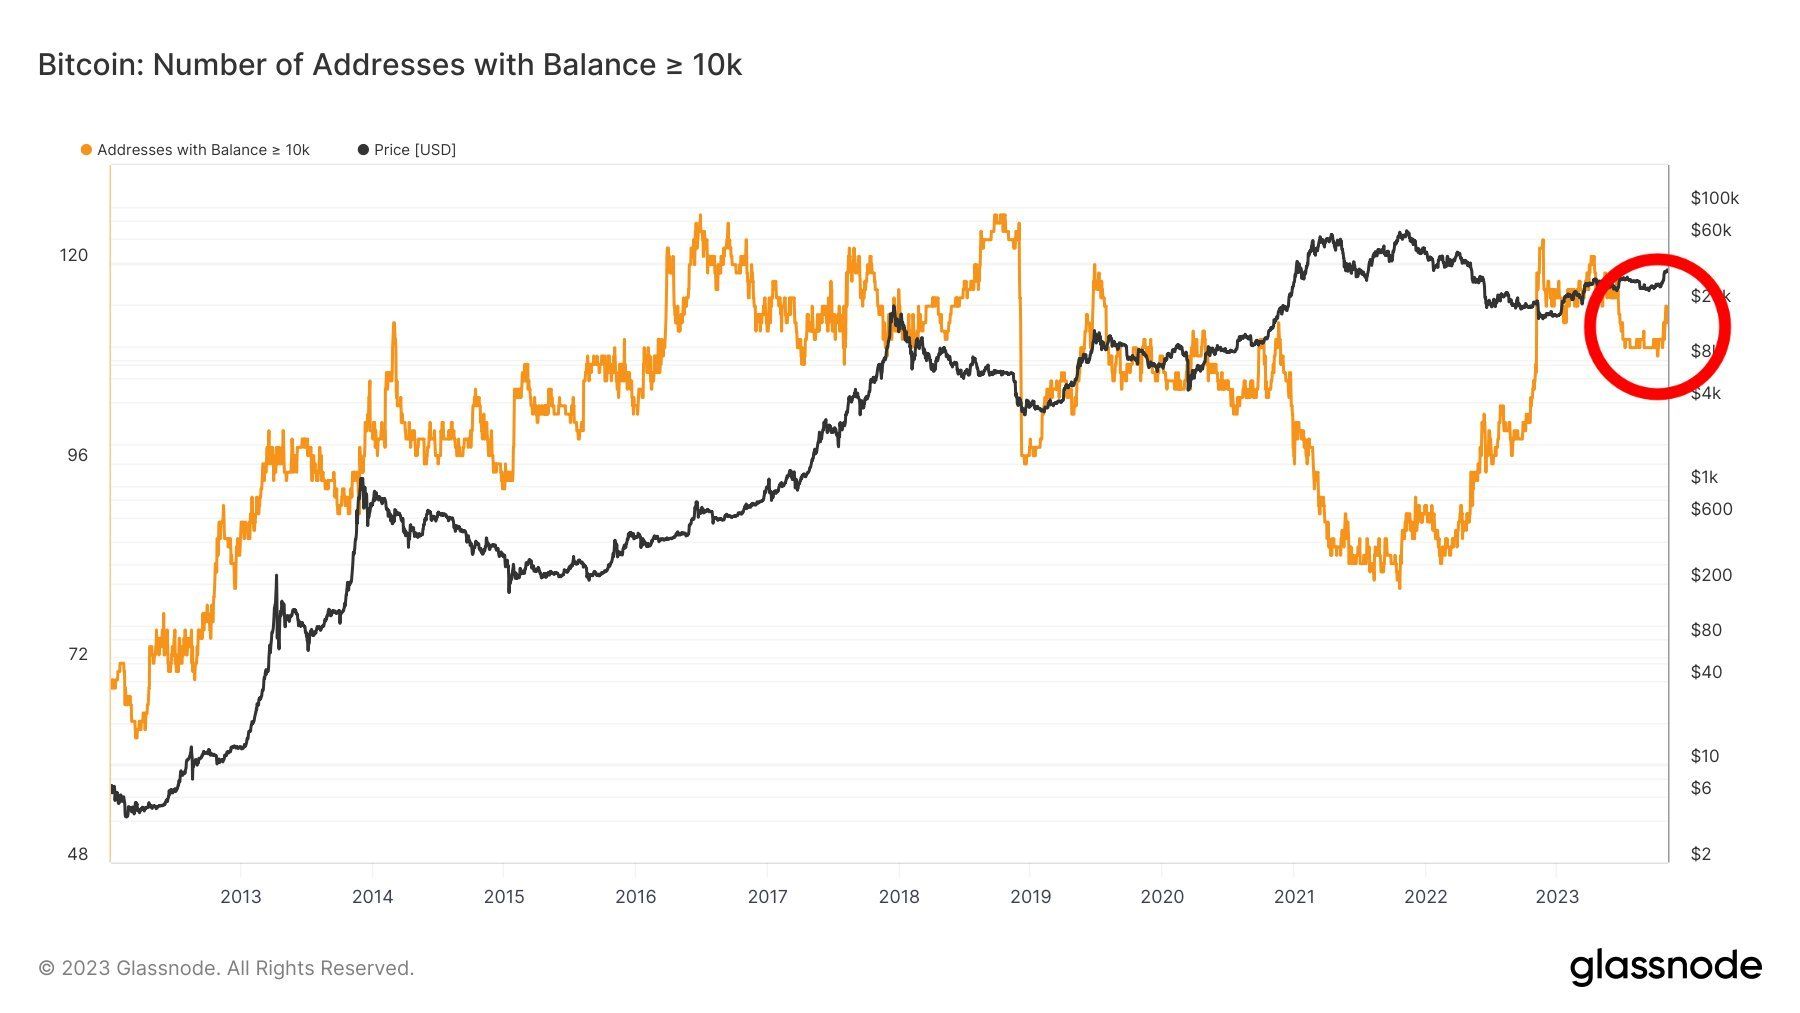 La curva naranja es el número de monederos con más de 10 mil BTC, la curva negra es el movimiento del precio de Bitcoin